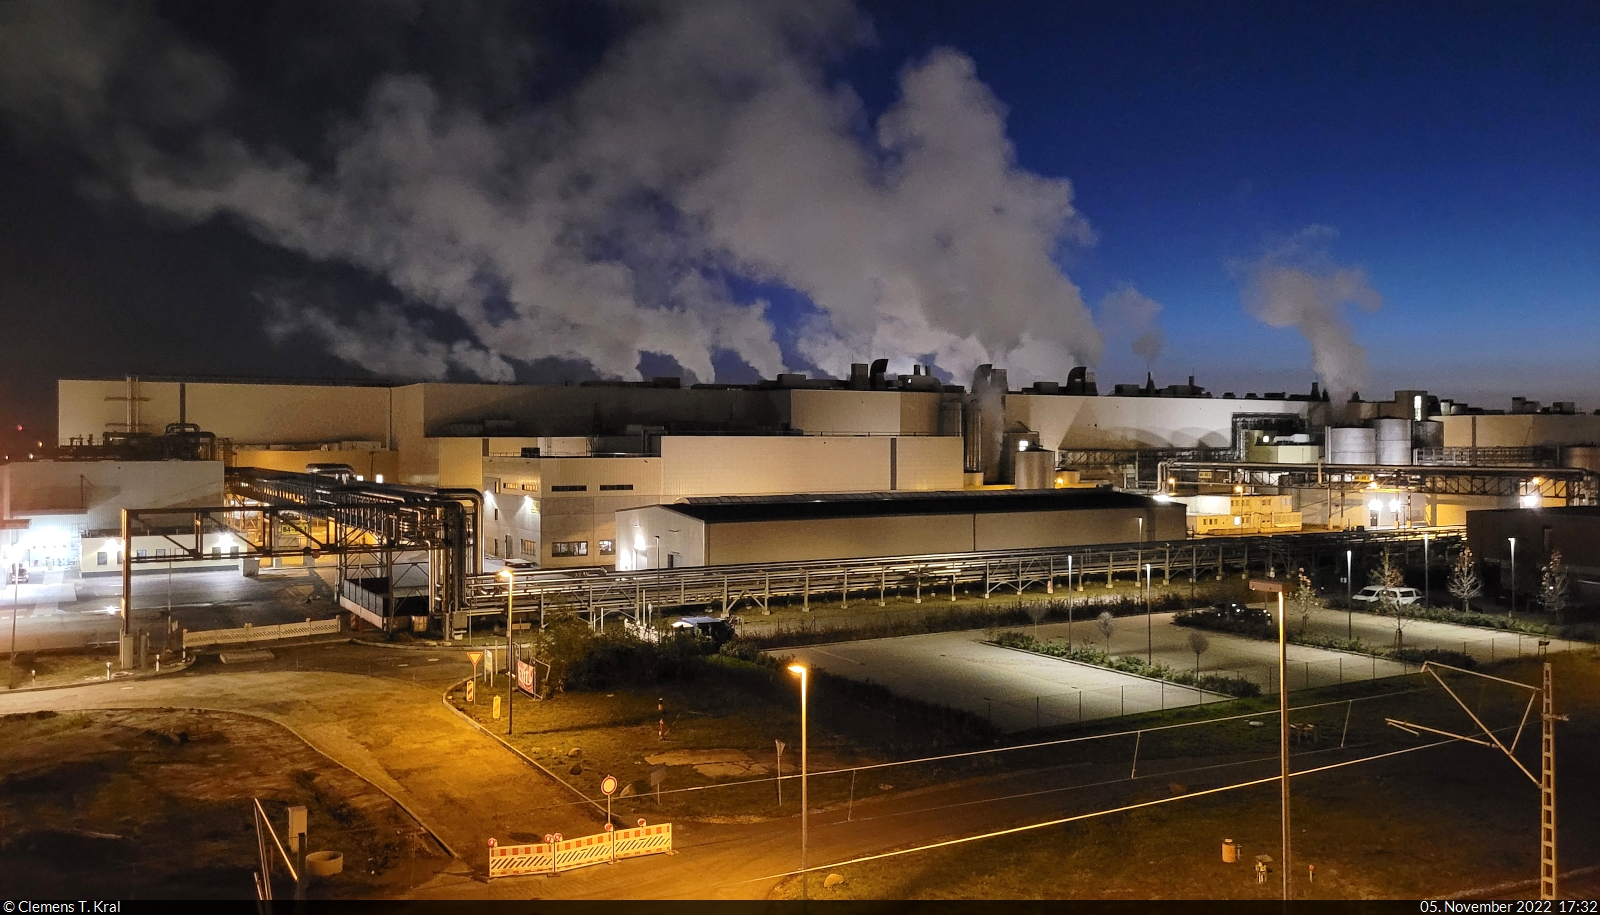 Industriepark Schwarze Pumpe unter klarem Abendhimmel, gesehen aus einem Sonderzug auf der Lausitzer Kohleverbindungsbahn.

🕓 5.11.2022 | 17:32 Uhr